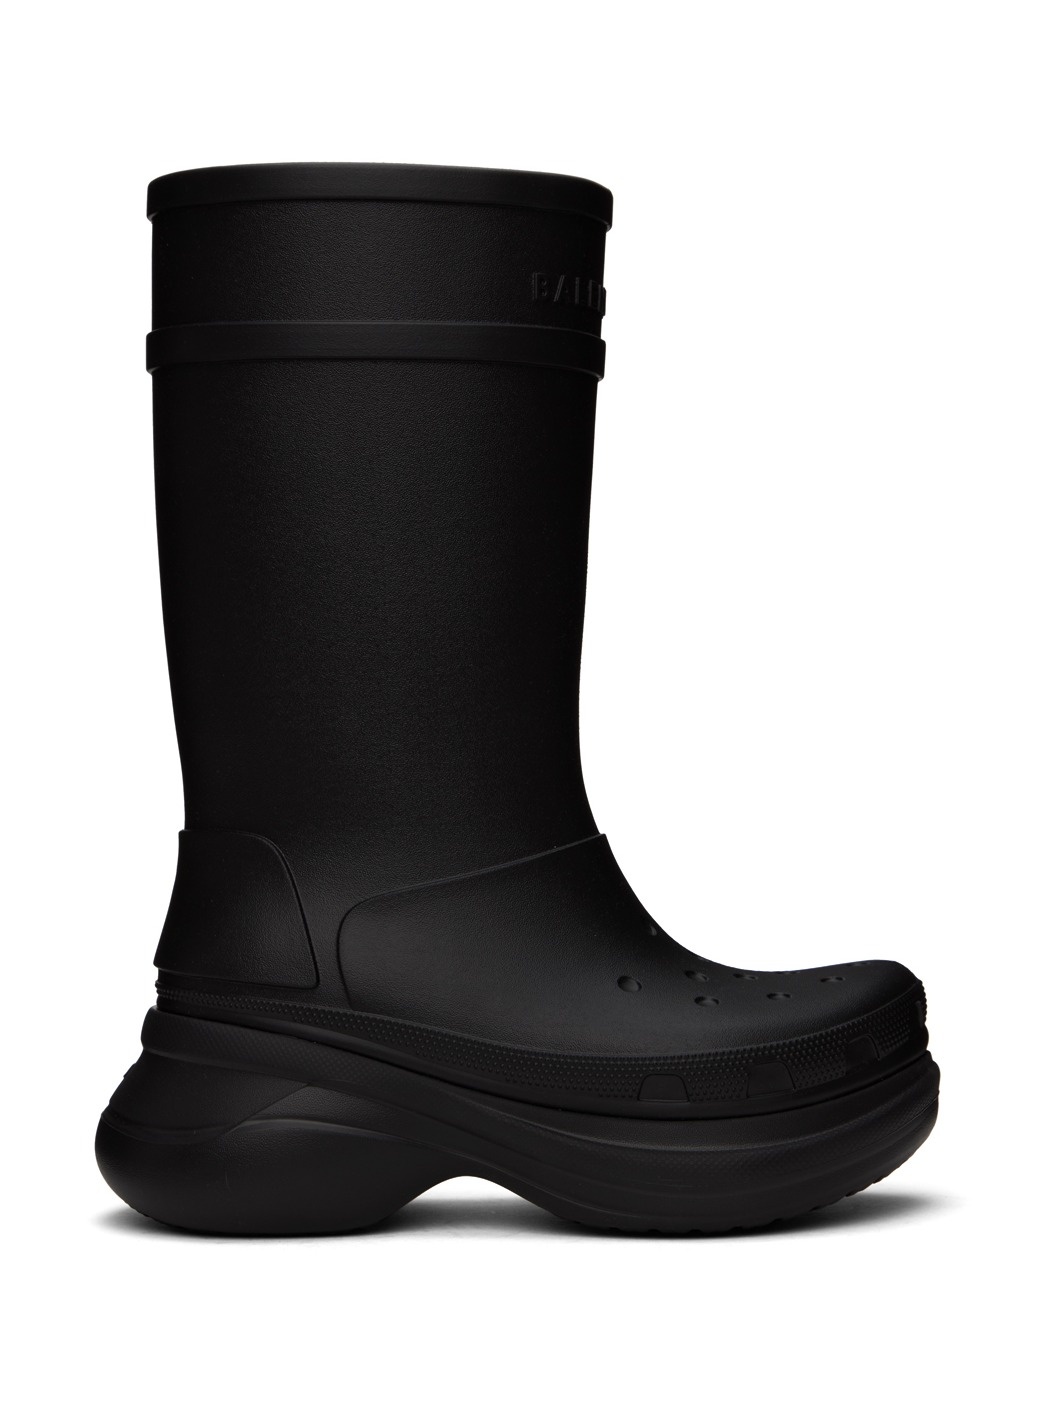 Black Crocs Edition Boots - 1